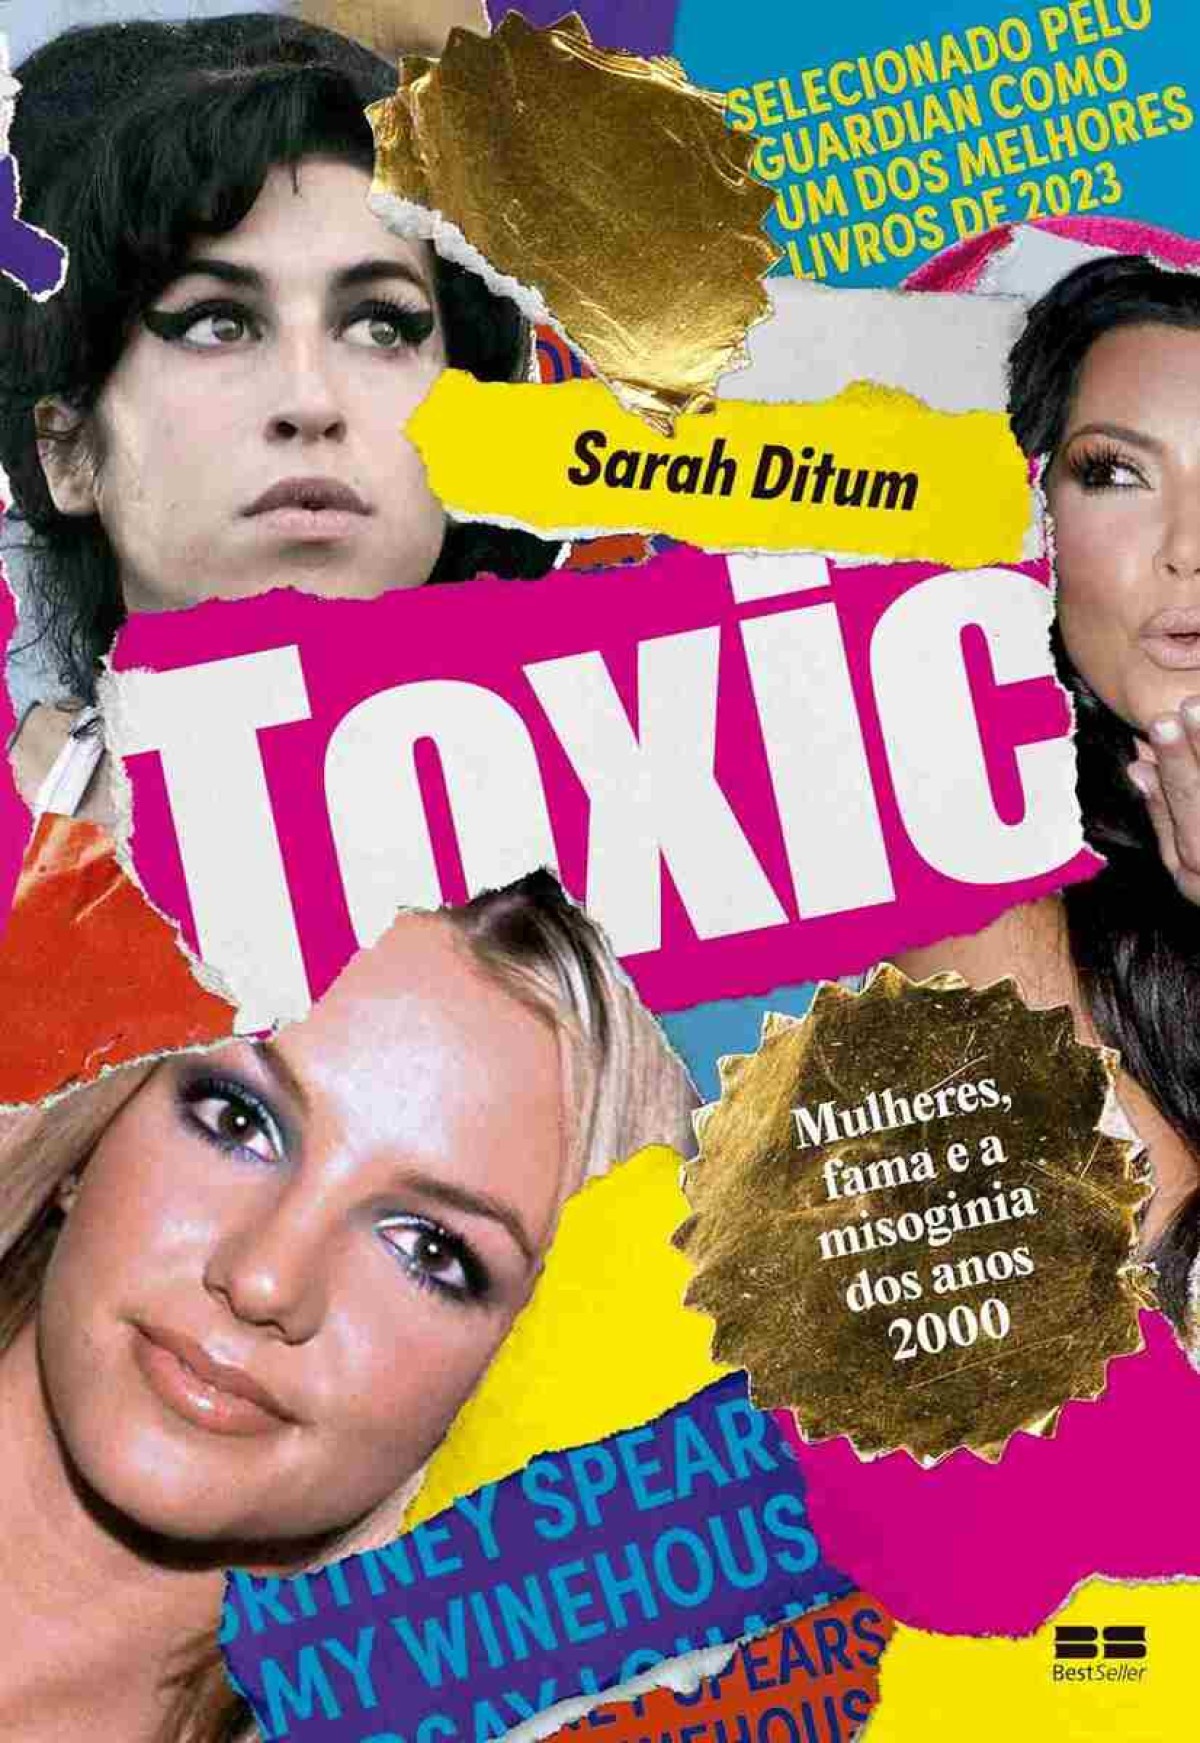 Toxic — Mulheres, fama e a misoginia dos anos 2000 De Sarah Ditum. Tradução: Carolina Simmer. BestSeller, 348 páginas. R$ 62,90 